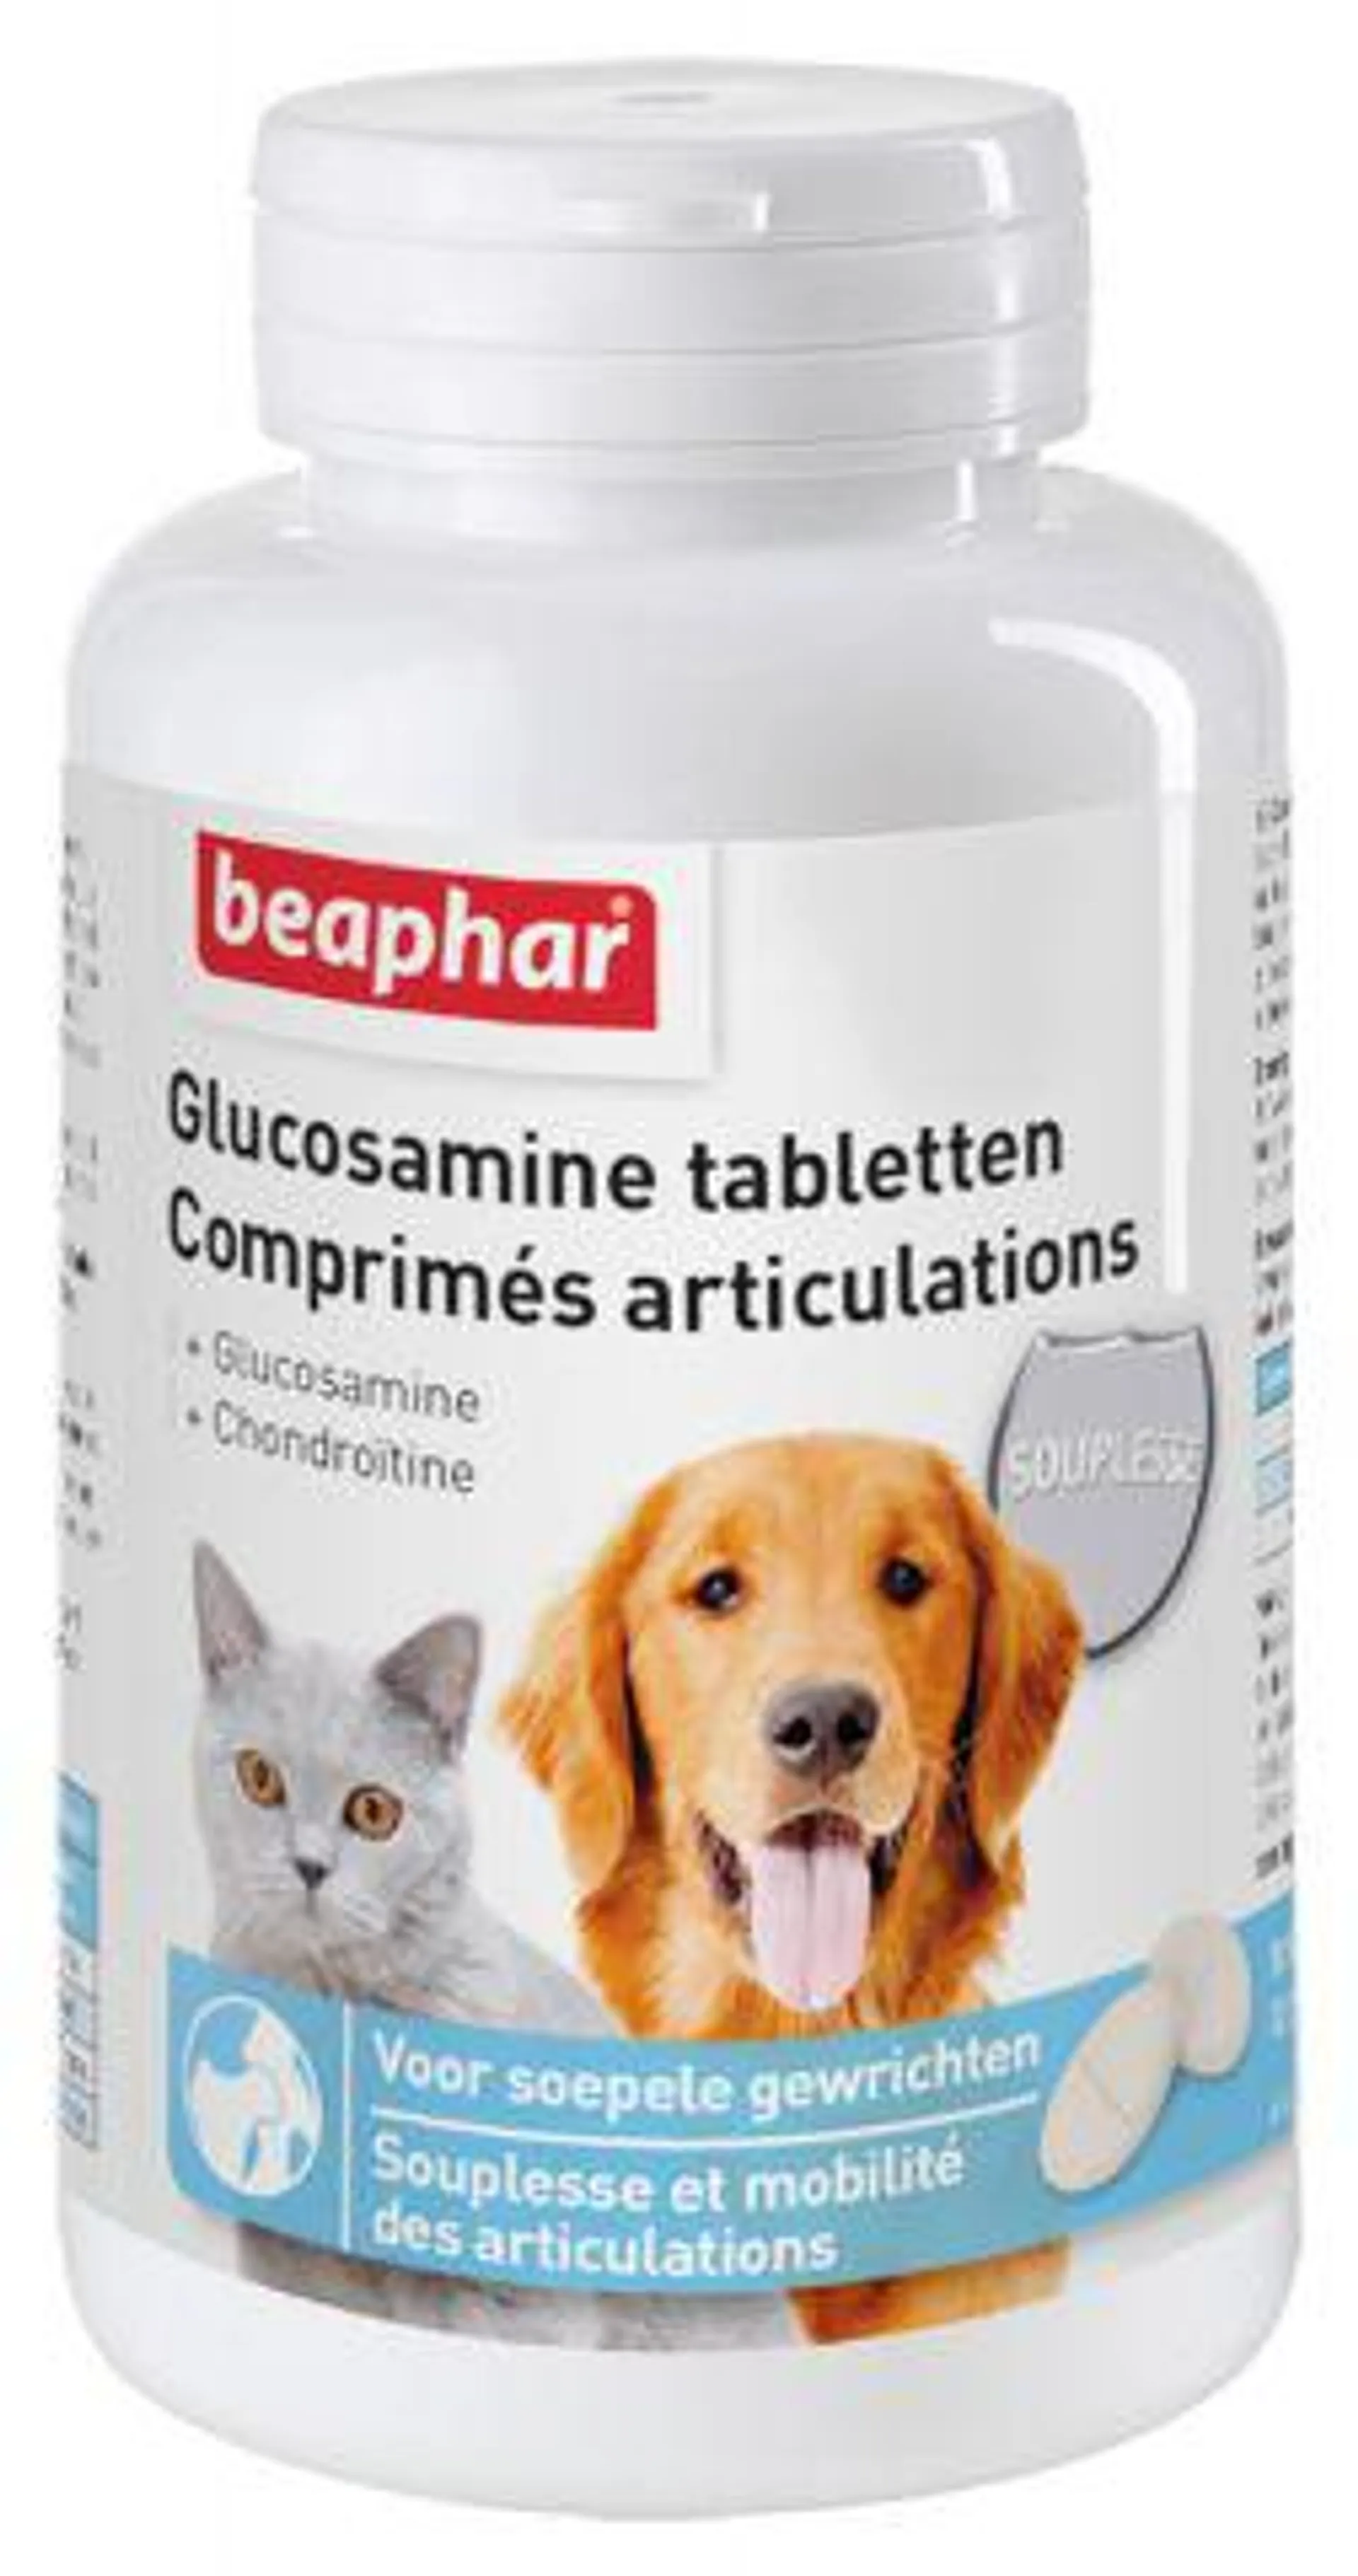 Beaphar - Gluccosamine Tabletten - 60 stuks